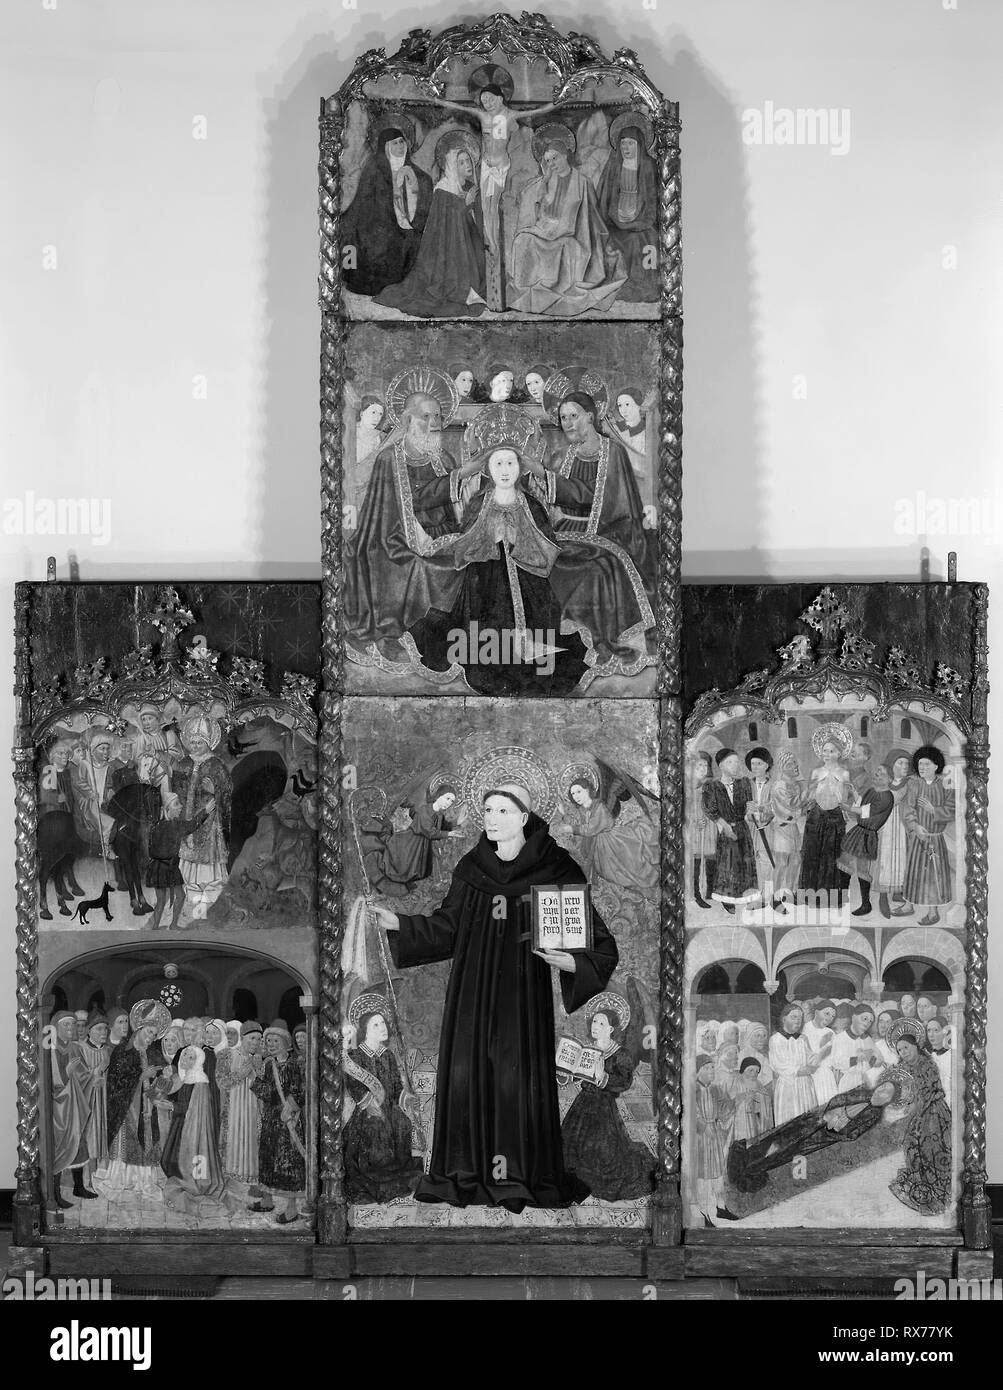 Altarbild der heiligen Athanasius, Blaise und Agatha. Meister der Riglos; Spanisch (Aragonien), Aktive c. 1435-60. Datum: 1400-1500. Abmessungen: Christus am Kreuz: 69,8 x 81,2 cm (27 1/2 x 32 in.) Bemalte Fläche: 61 x 73 cm (24 1/2 x 28 3/4 in.) Krönung der Jungfrau: 87,4 x 80,3 cm (34 3/8 x 31 5/8 in.) Bemalte Fläche: 87,3 x 73 cm (34 x 28 3/4 in.) Szenen aus dem Leben des heiligen Blasius: 154,3 x 69,8 cm (60 3/4 x 27 1/2 in.) Bemalte Fläche: 125,7 x 66 cm (49 1/2 x 26 in.) hl. Athanasius: 128,6 x 82 cm (50 5/8 x 32 1/4 in.) Bemalte Fläche: 124,7 x 73,7 cm (49 1/8 x 29 in.) Szenen aus t Stockfoto